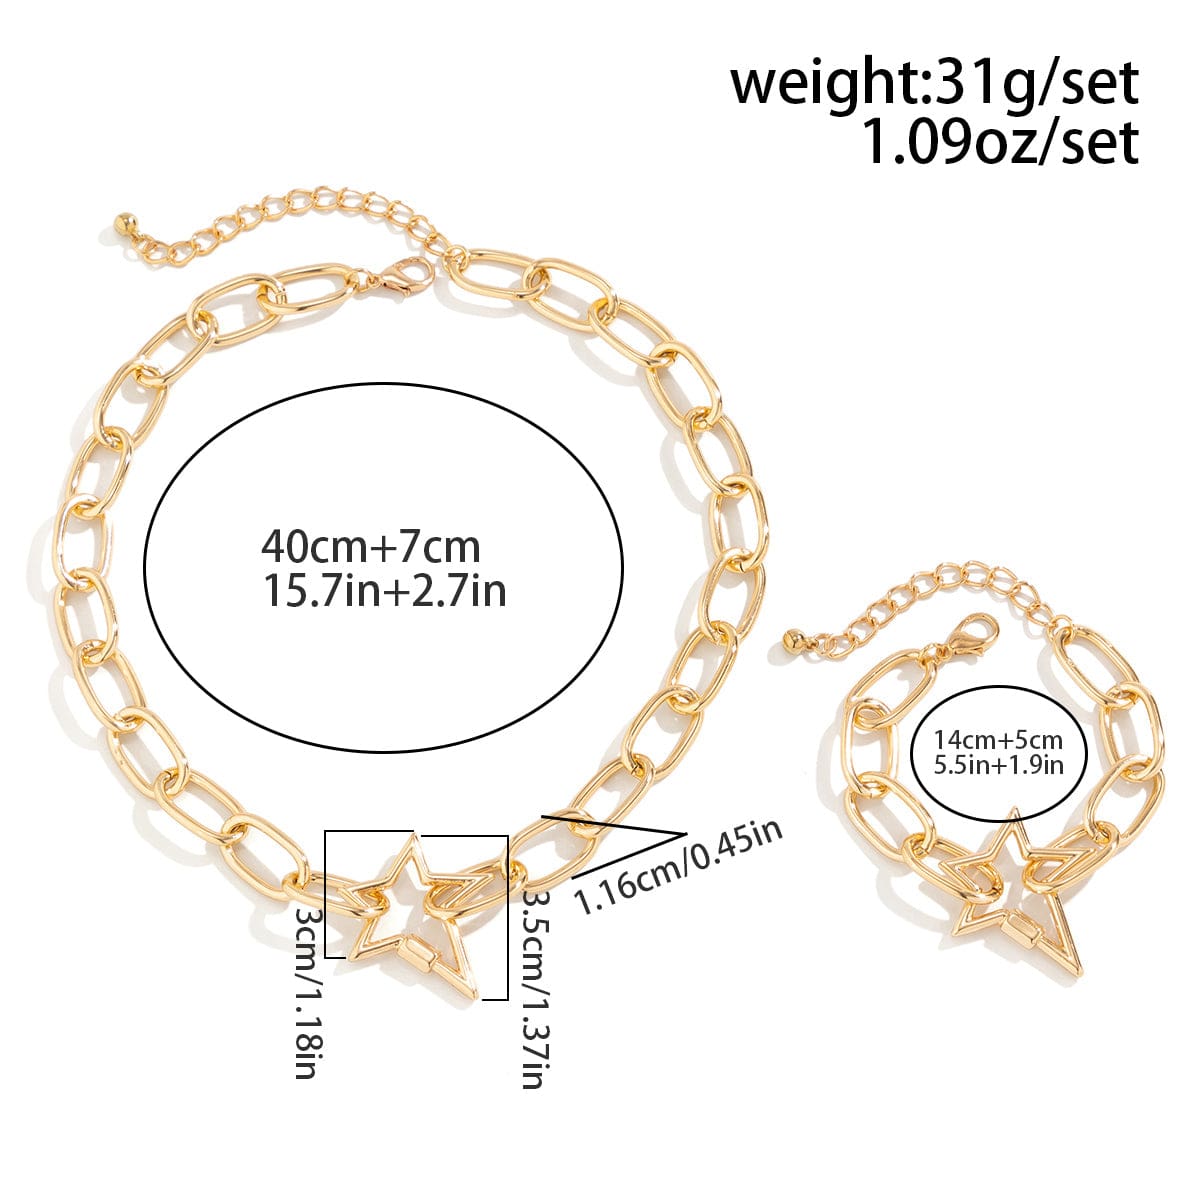 Newly Hollow Star Pendant Cable Chain Necklace Bracelet Set - ArtGalleryZen